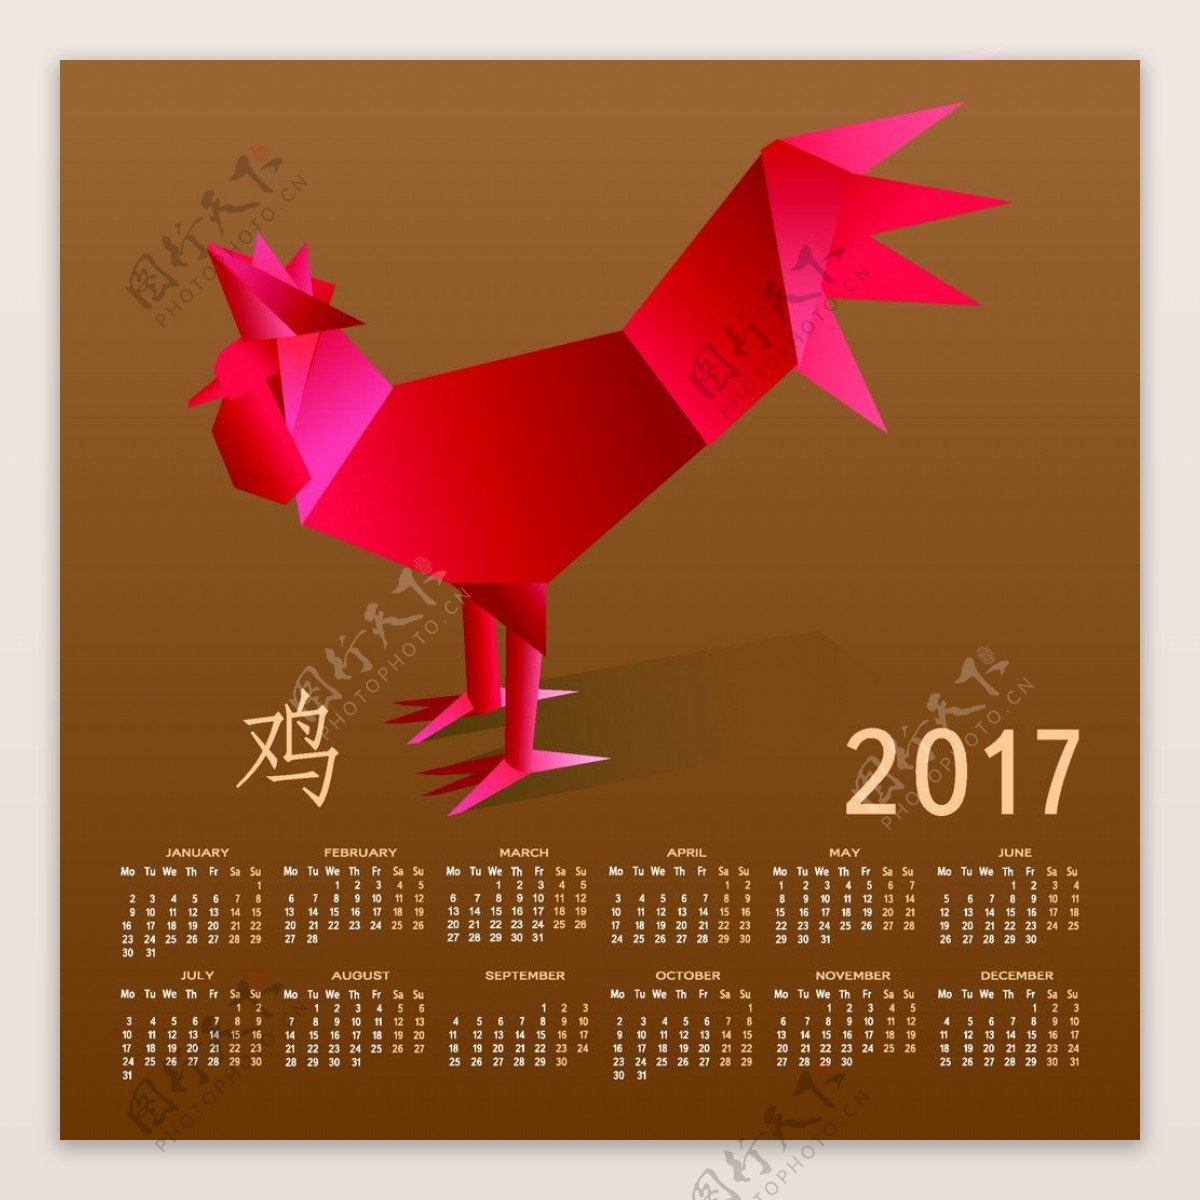 折纸鸡台历设计图片